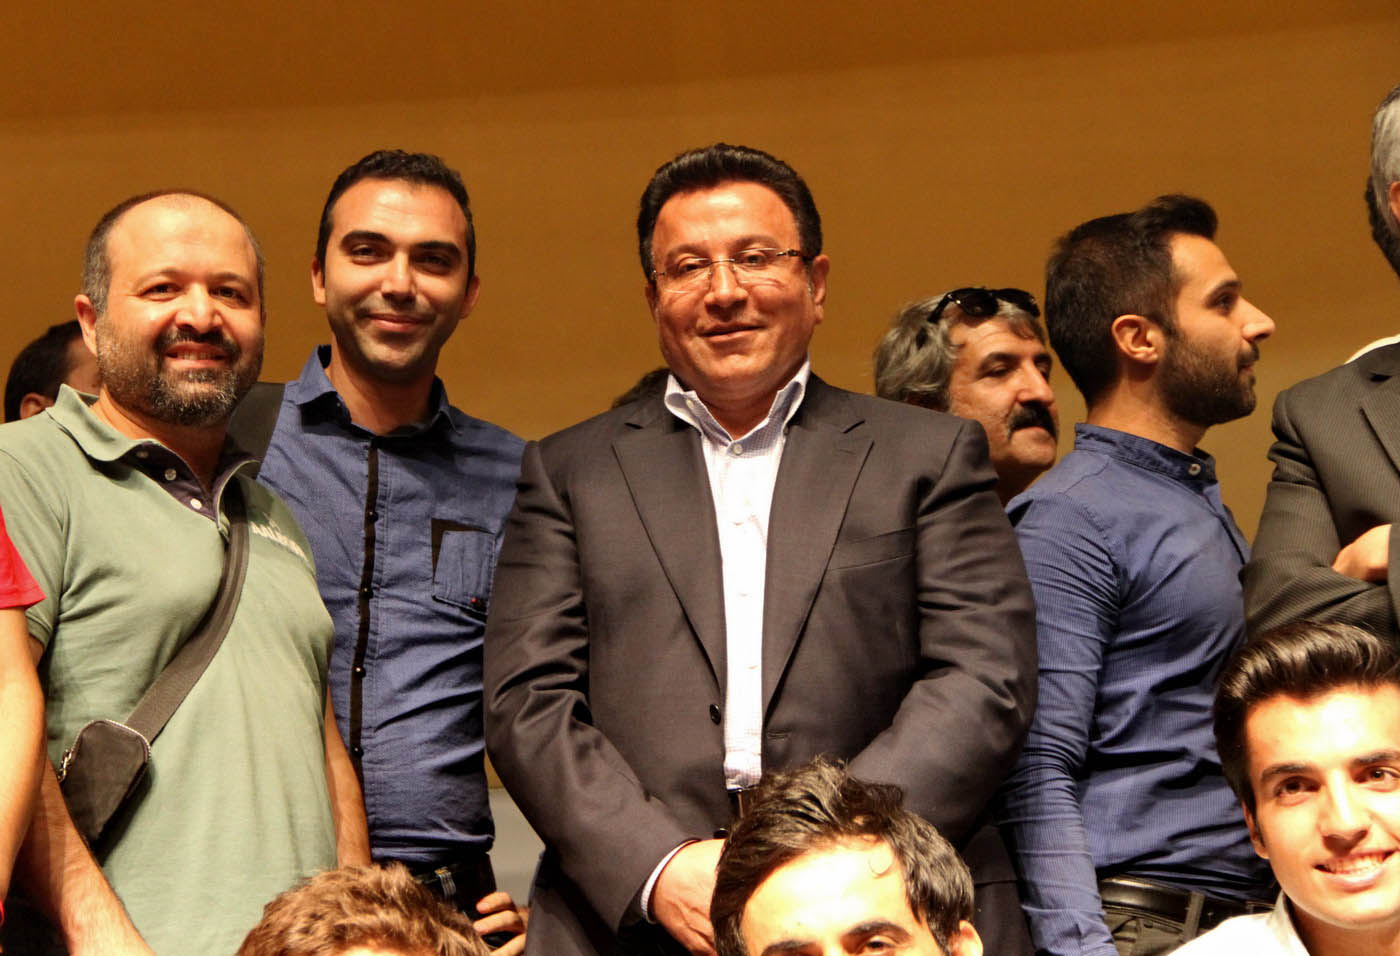 حسین هدایتی از پیروزی در مزایده خبر داد: برنده واقعی شما هواداران هستید